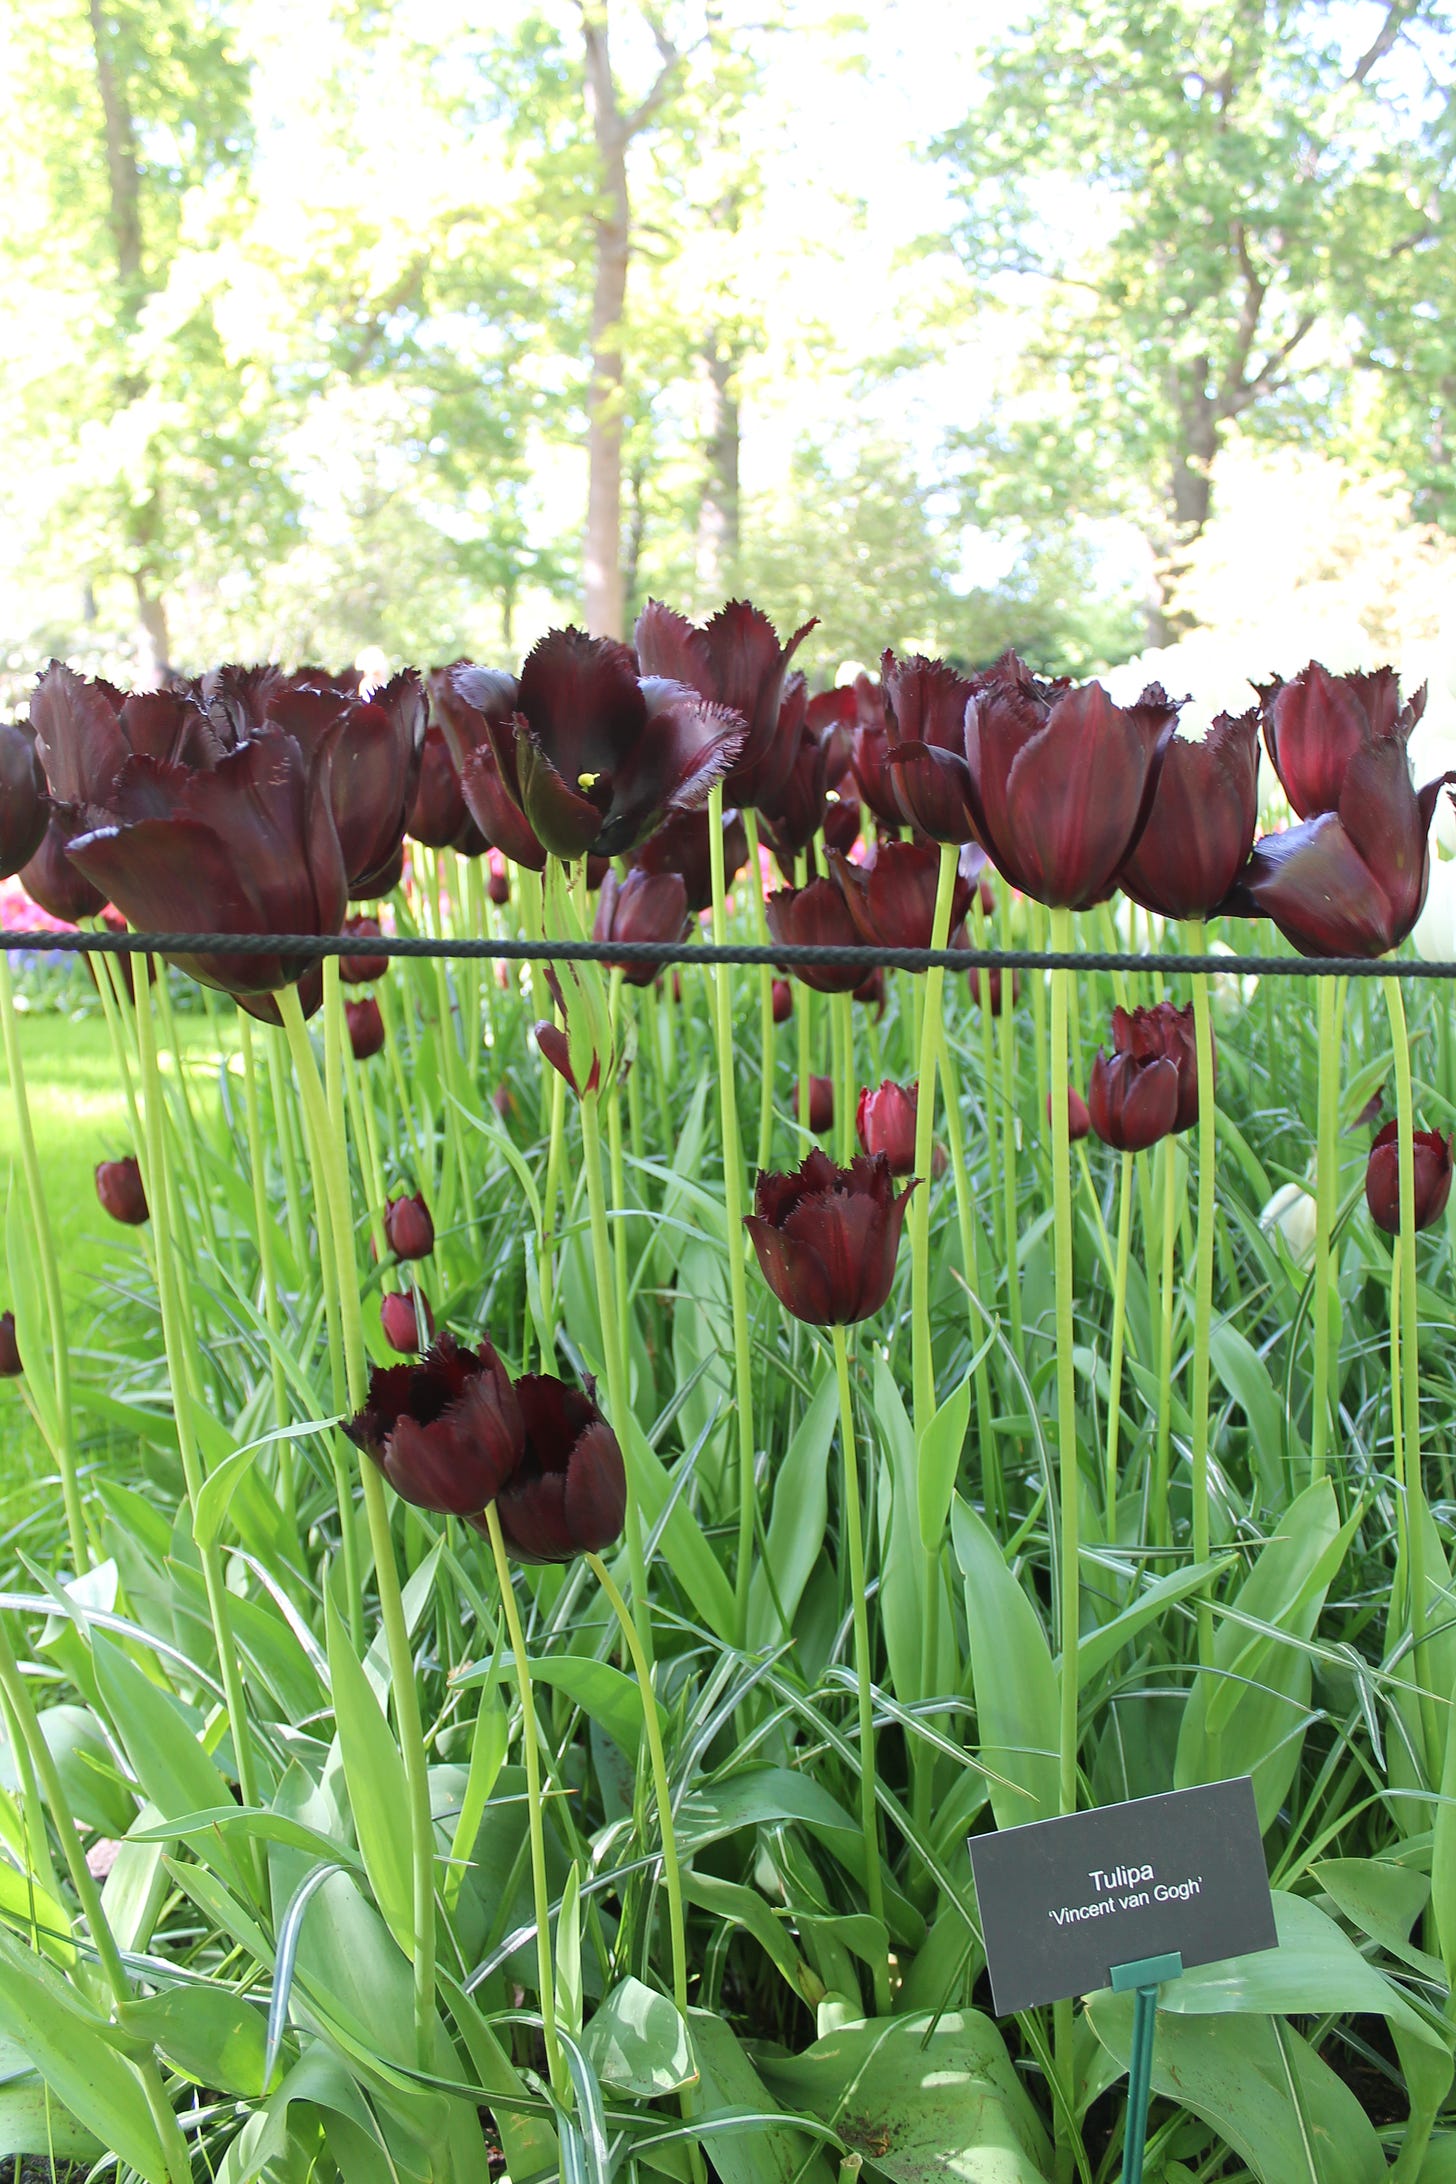 foto que mostra um canteiro com tulipas em um tom bordô bem escuro, quase preto. a plaquinha abaixo diz "tulipa vincent van gogh"